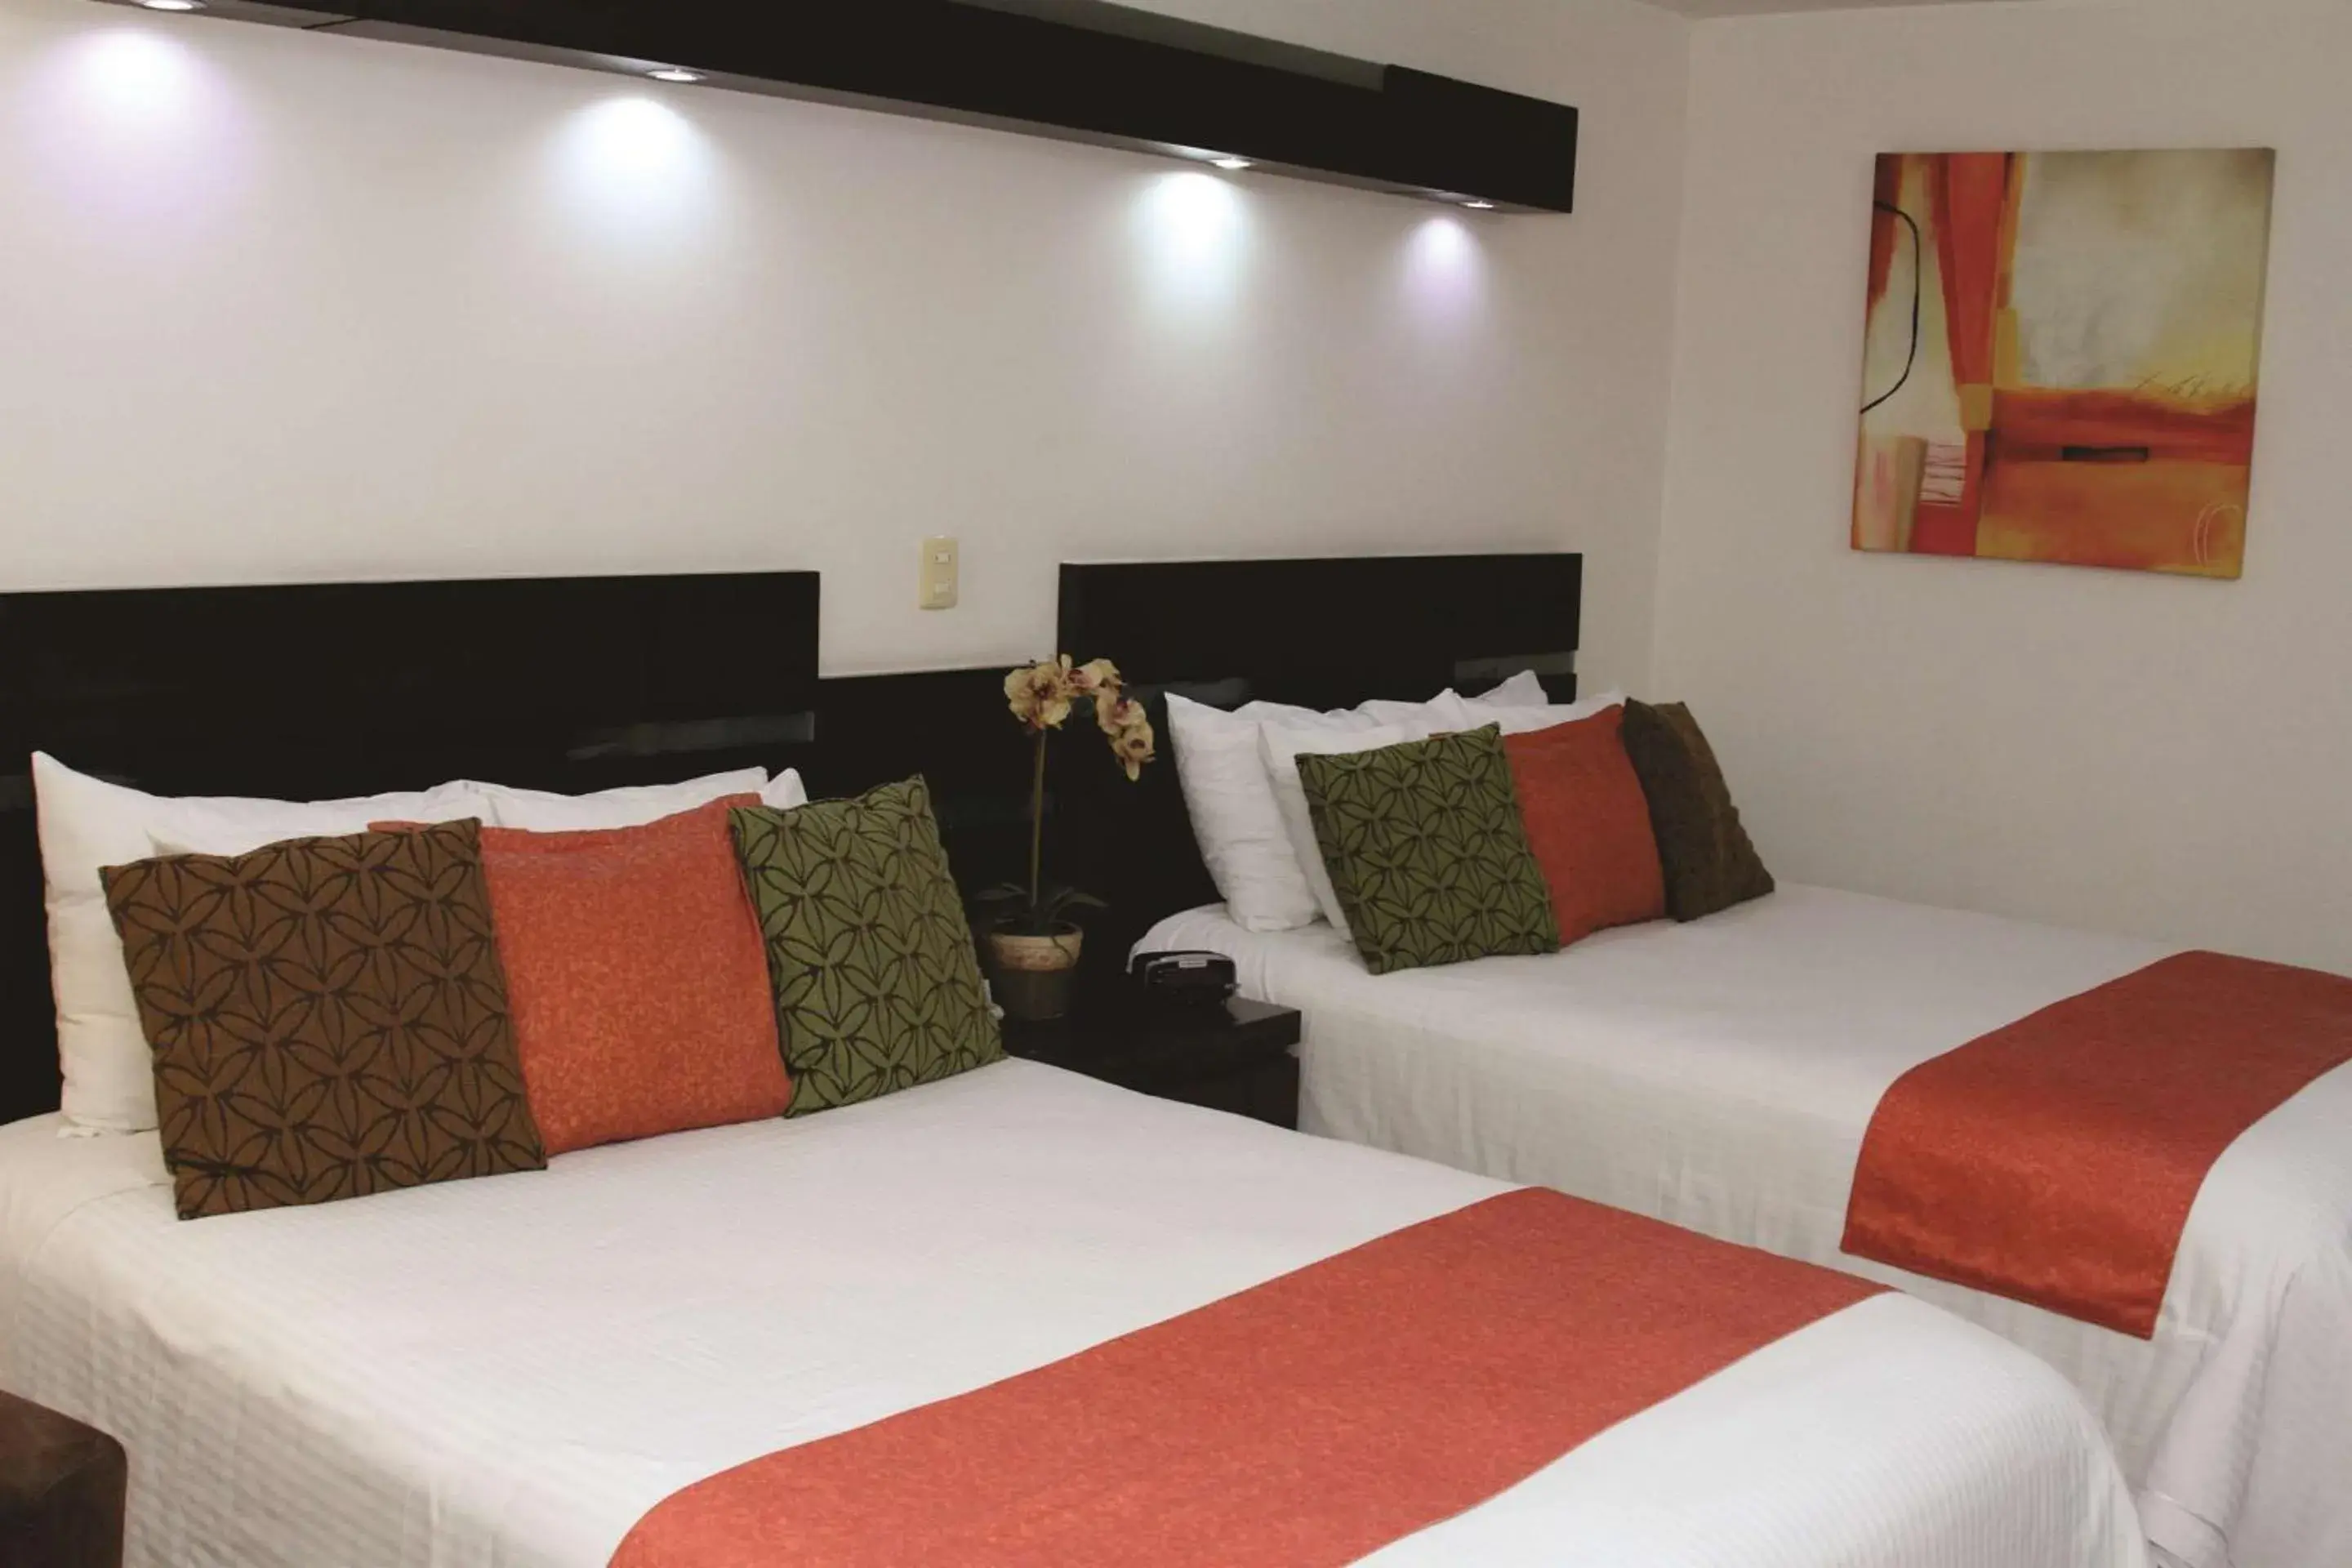 Bed in Hotel Poza Rica Centro